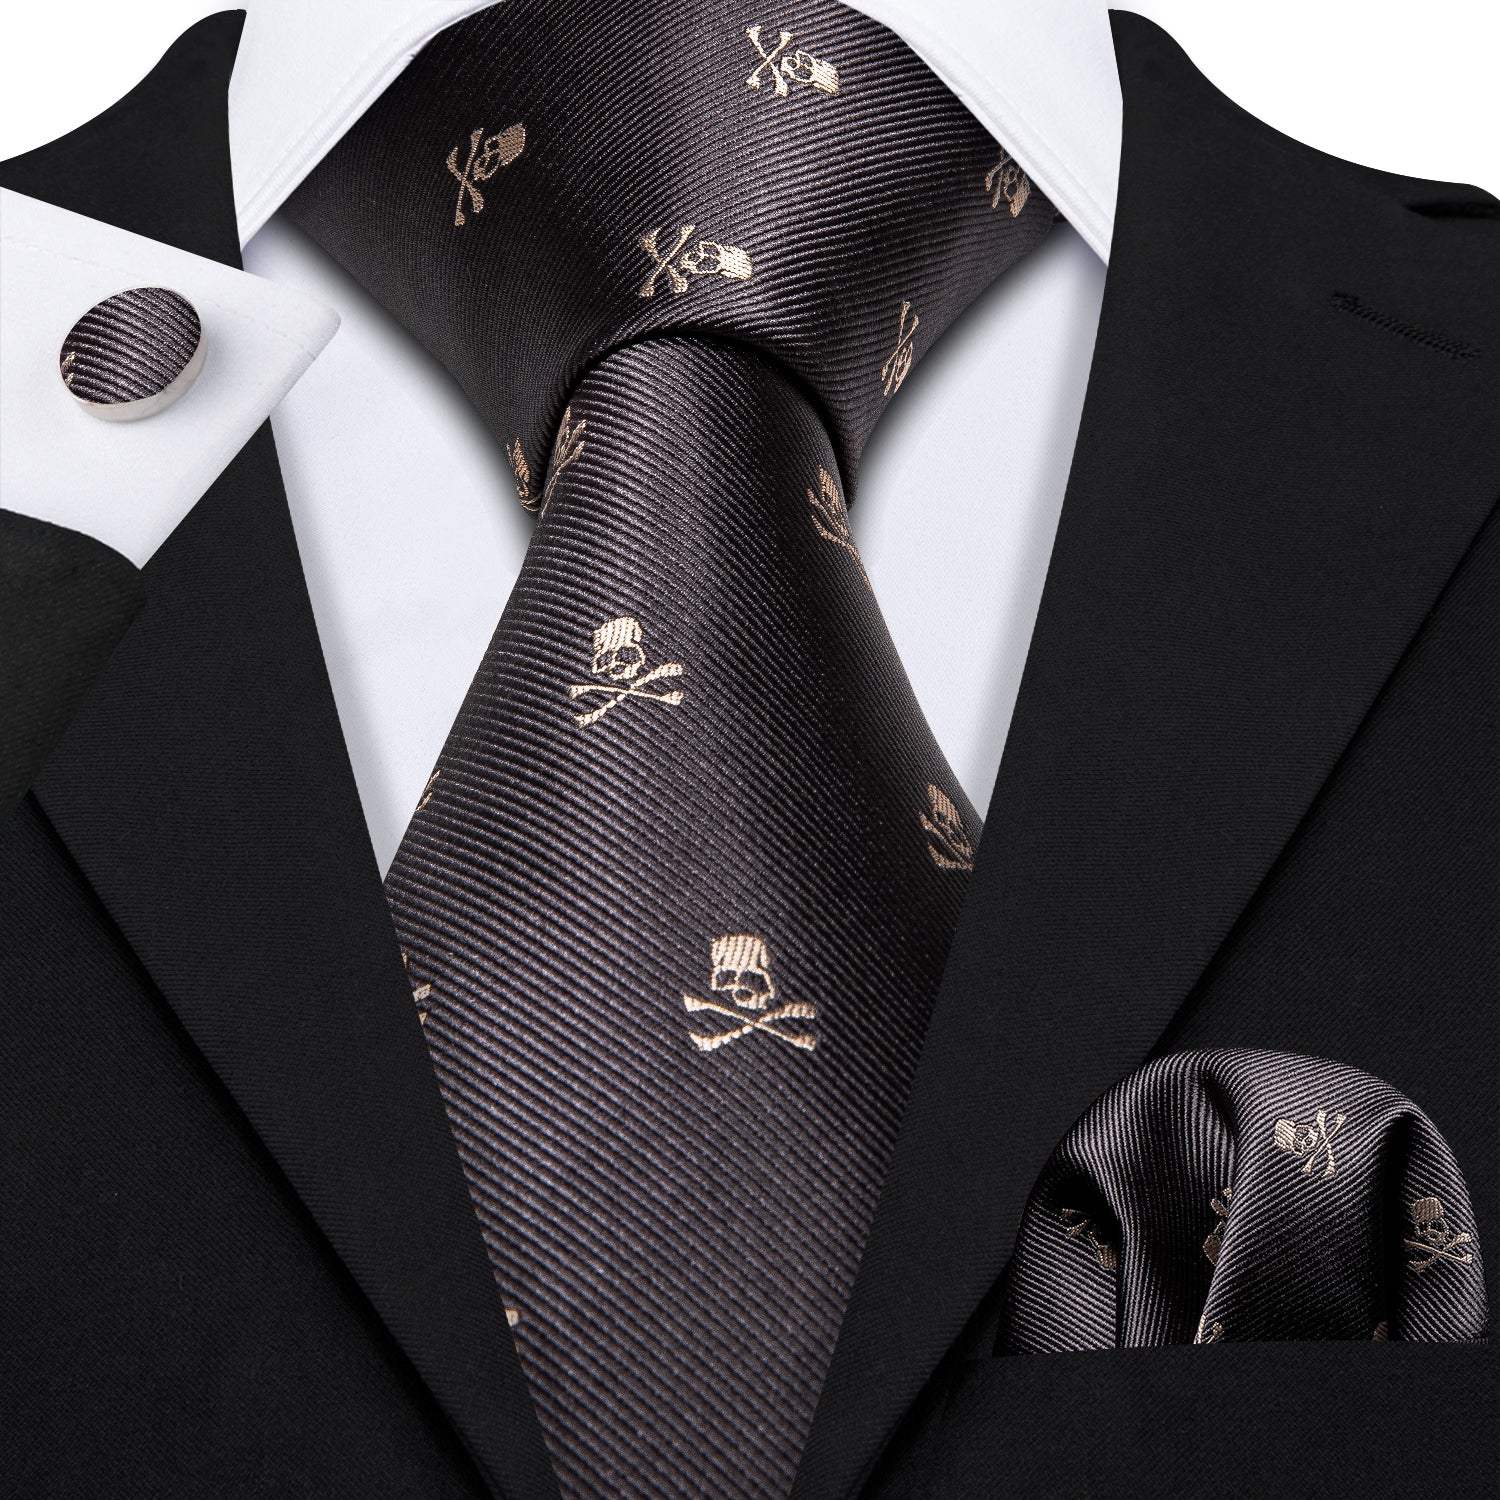 Barry.wang Gray Tie Novelty Halloween Skull Tie Hanky Cufflinks Set